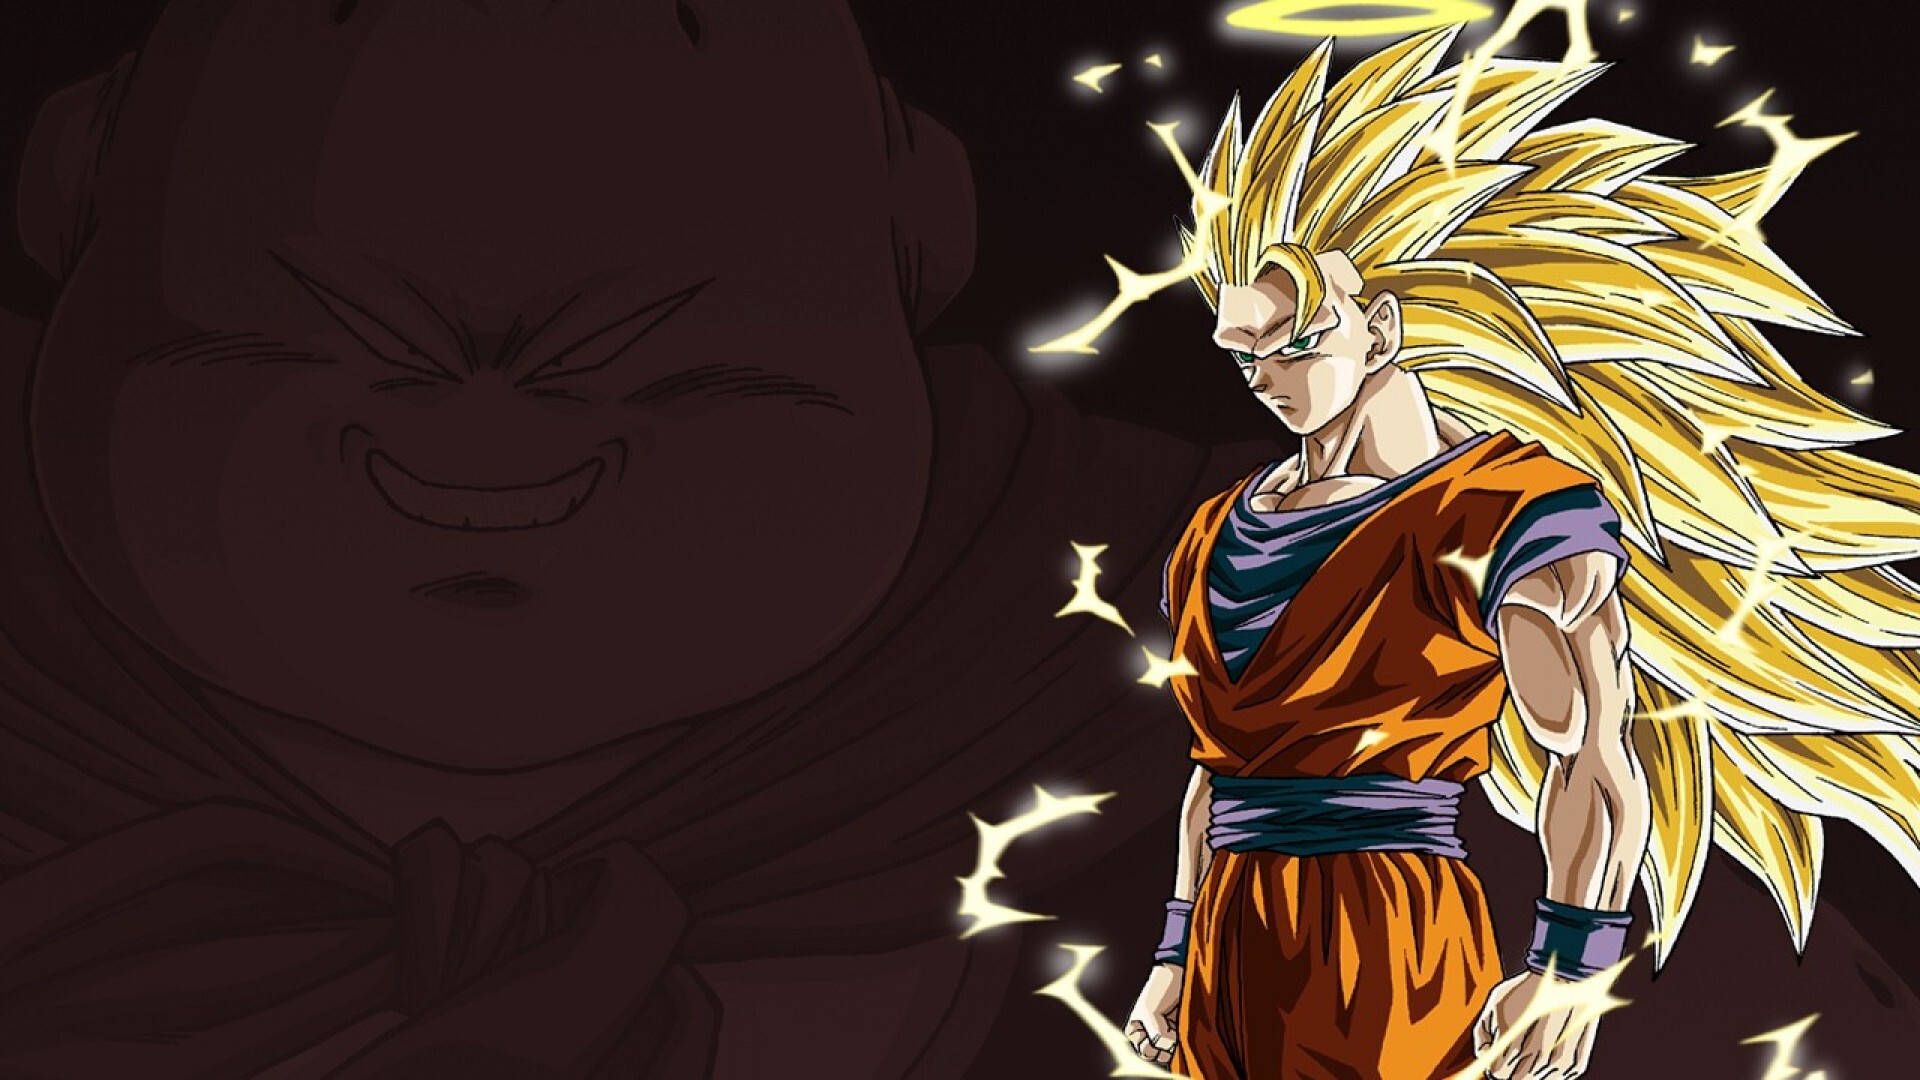 Goku Super Saiyan: SS transformation, Superhuman strength, Advanced transformation, Golden waist-length hair. 1920x1080 Full HD Wallpaper.